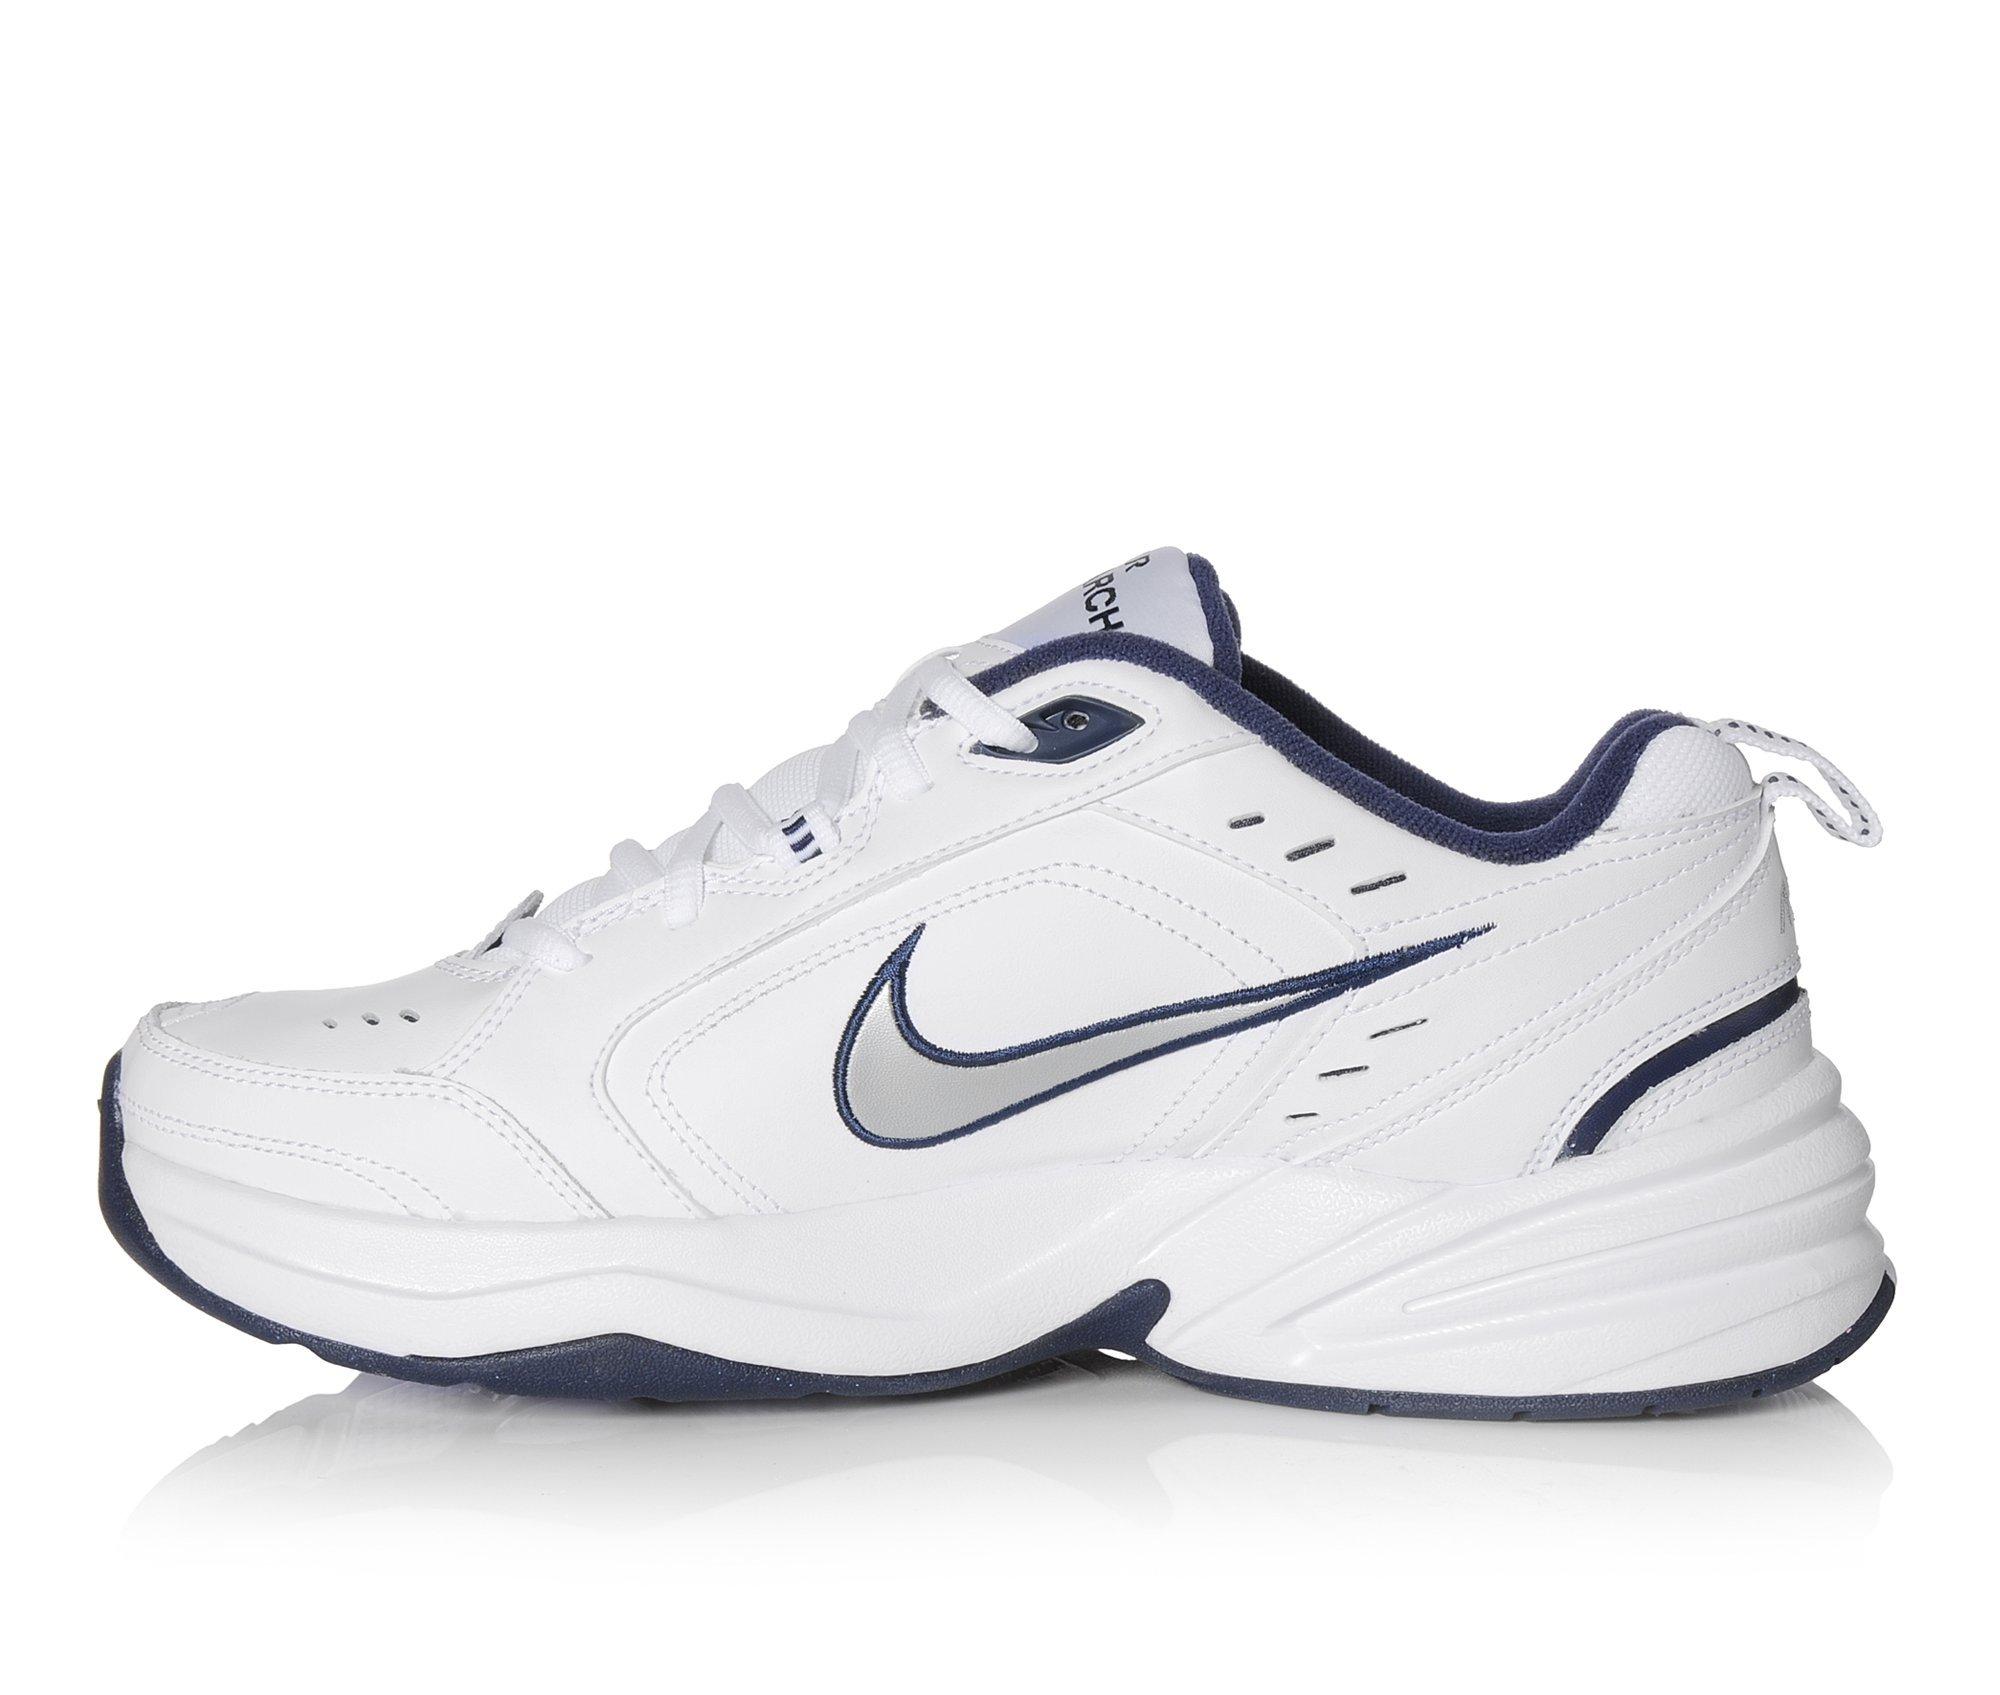 Leonardoda lanzamiento Puede ser ignorado Men's Nike Air Monarch IV Training Shoes | Shoe Carnival